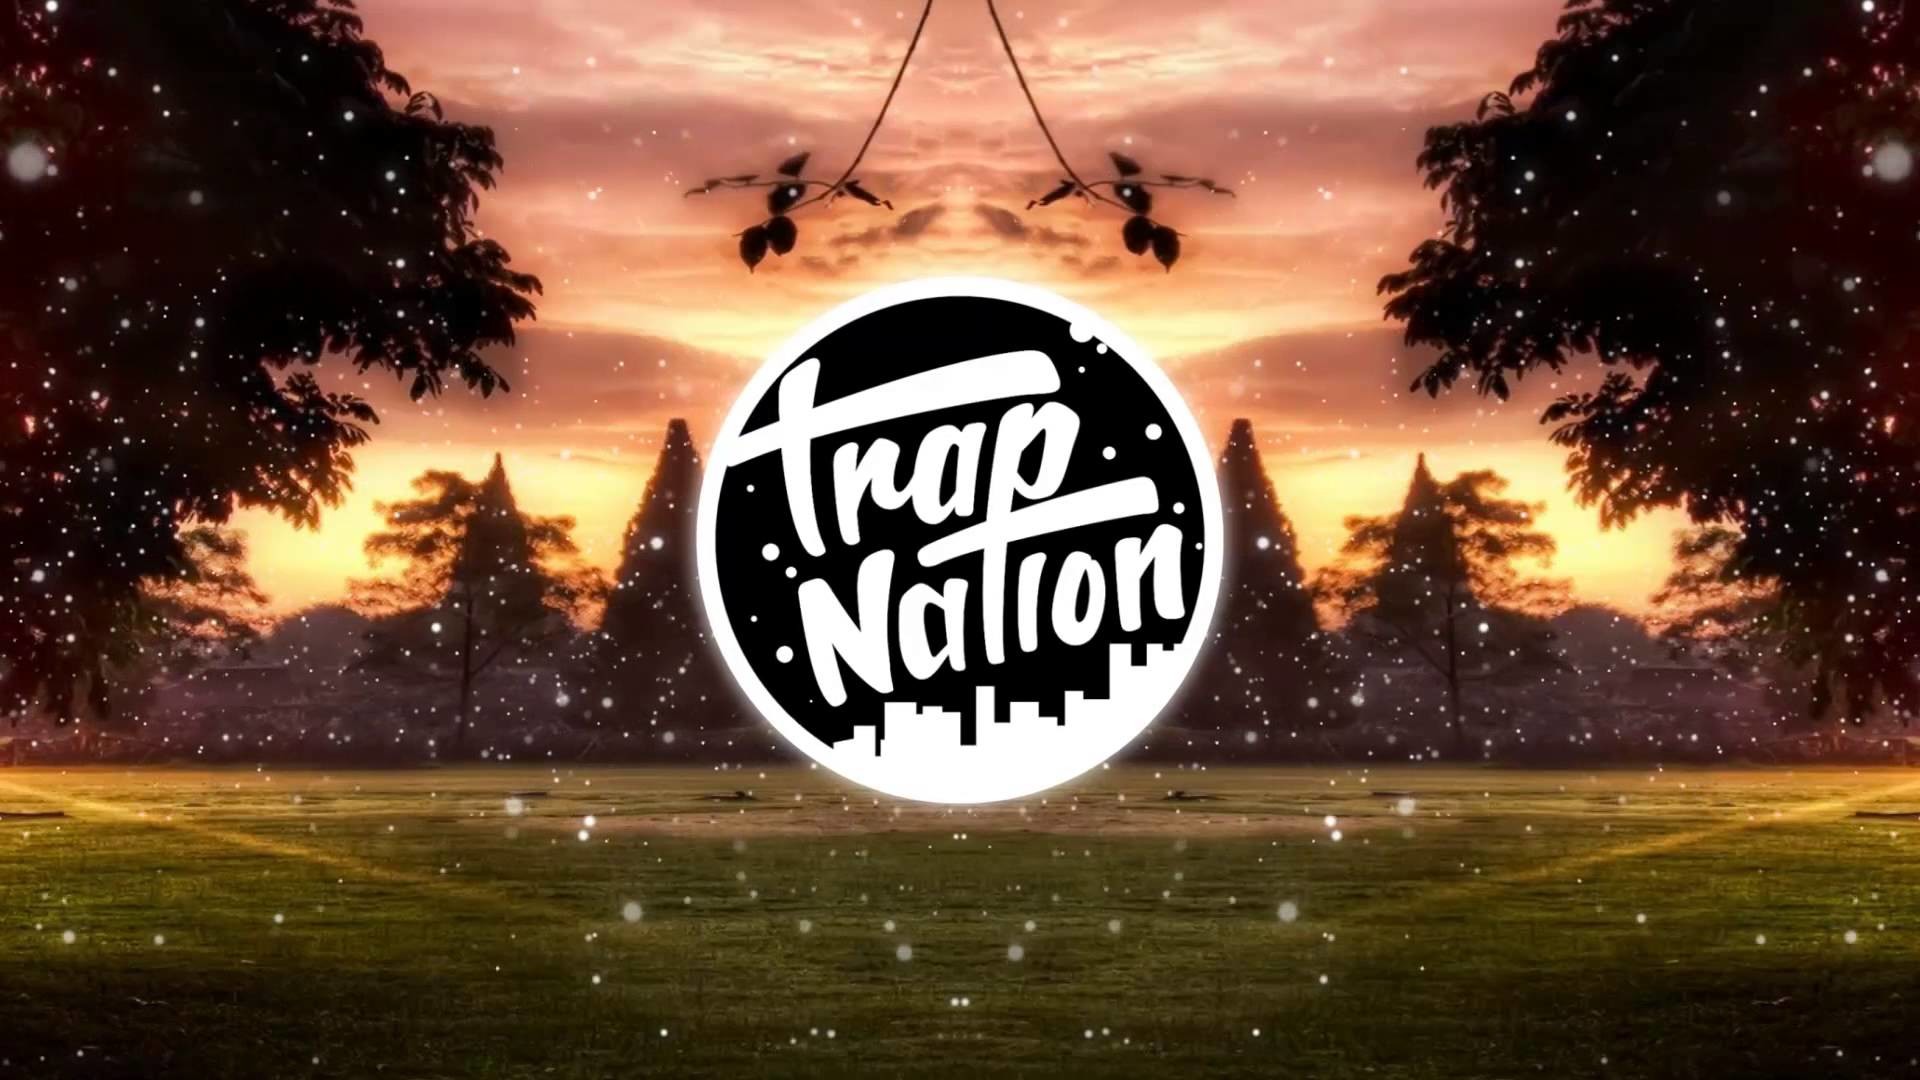 1920x1080 ... Trap Nation Wallpaper Dj Major Lazer & DJ Snake - Lean On feat.